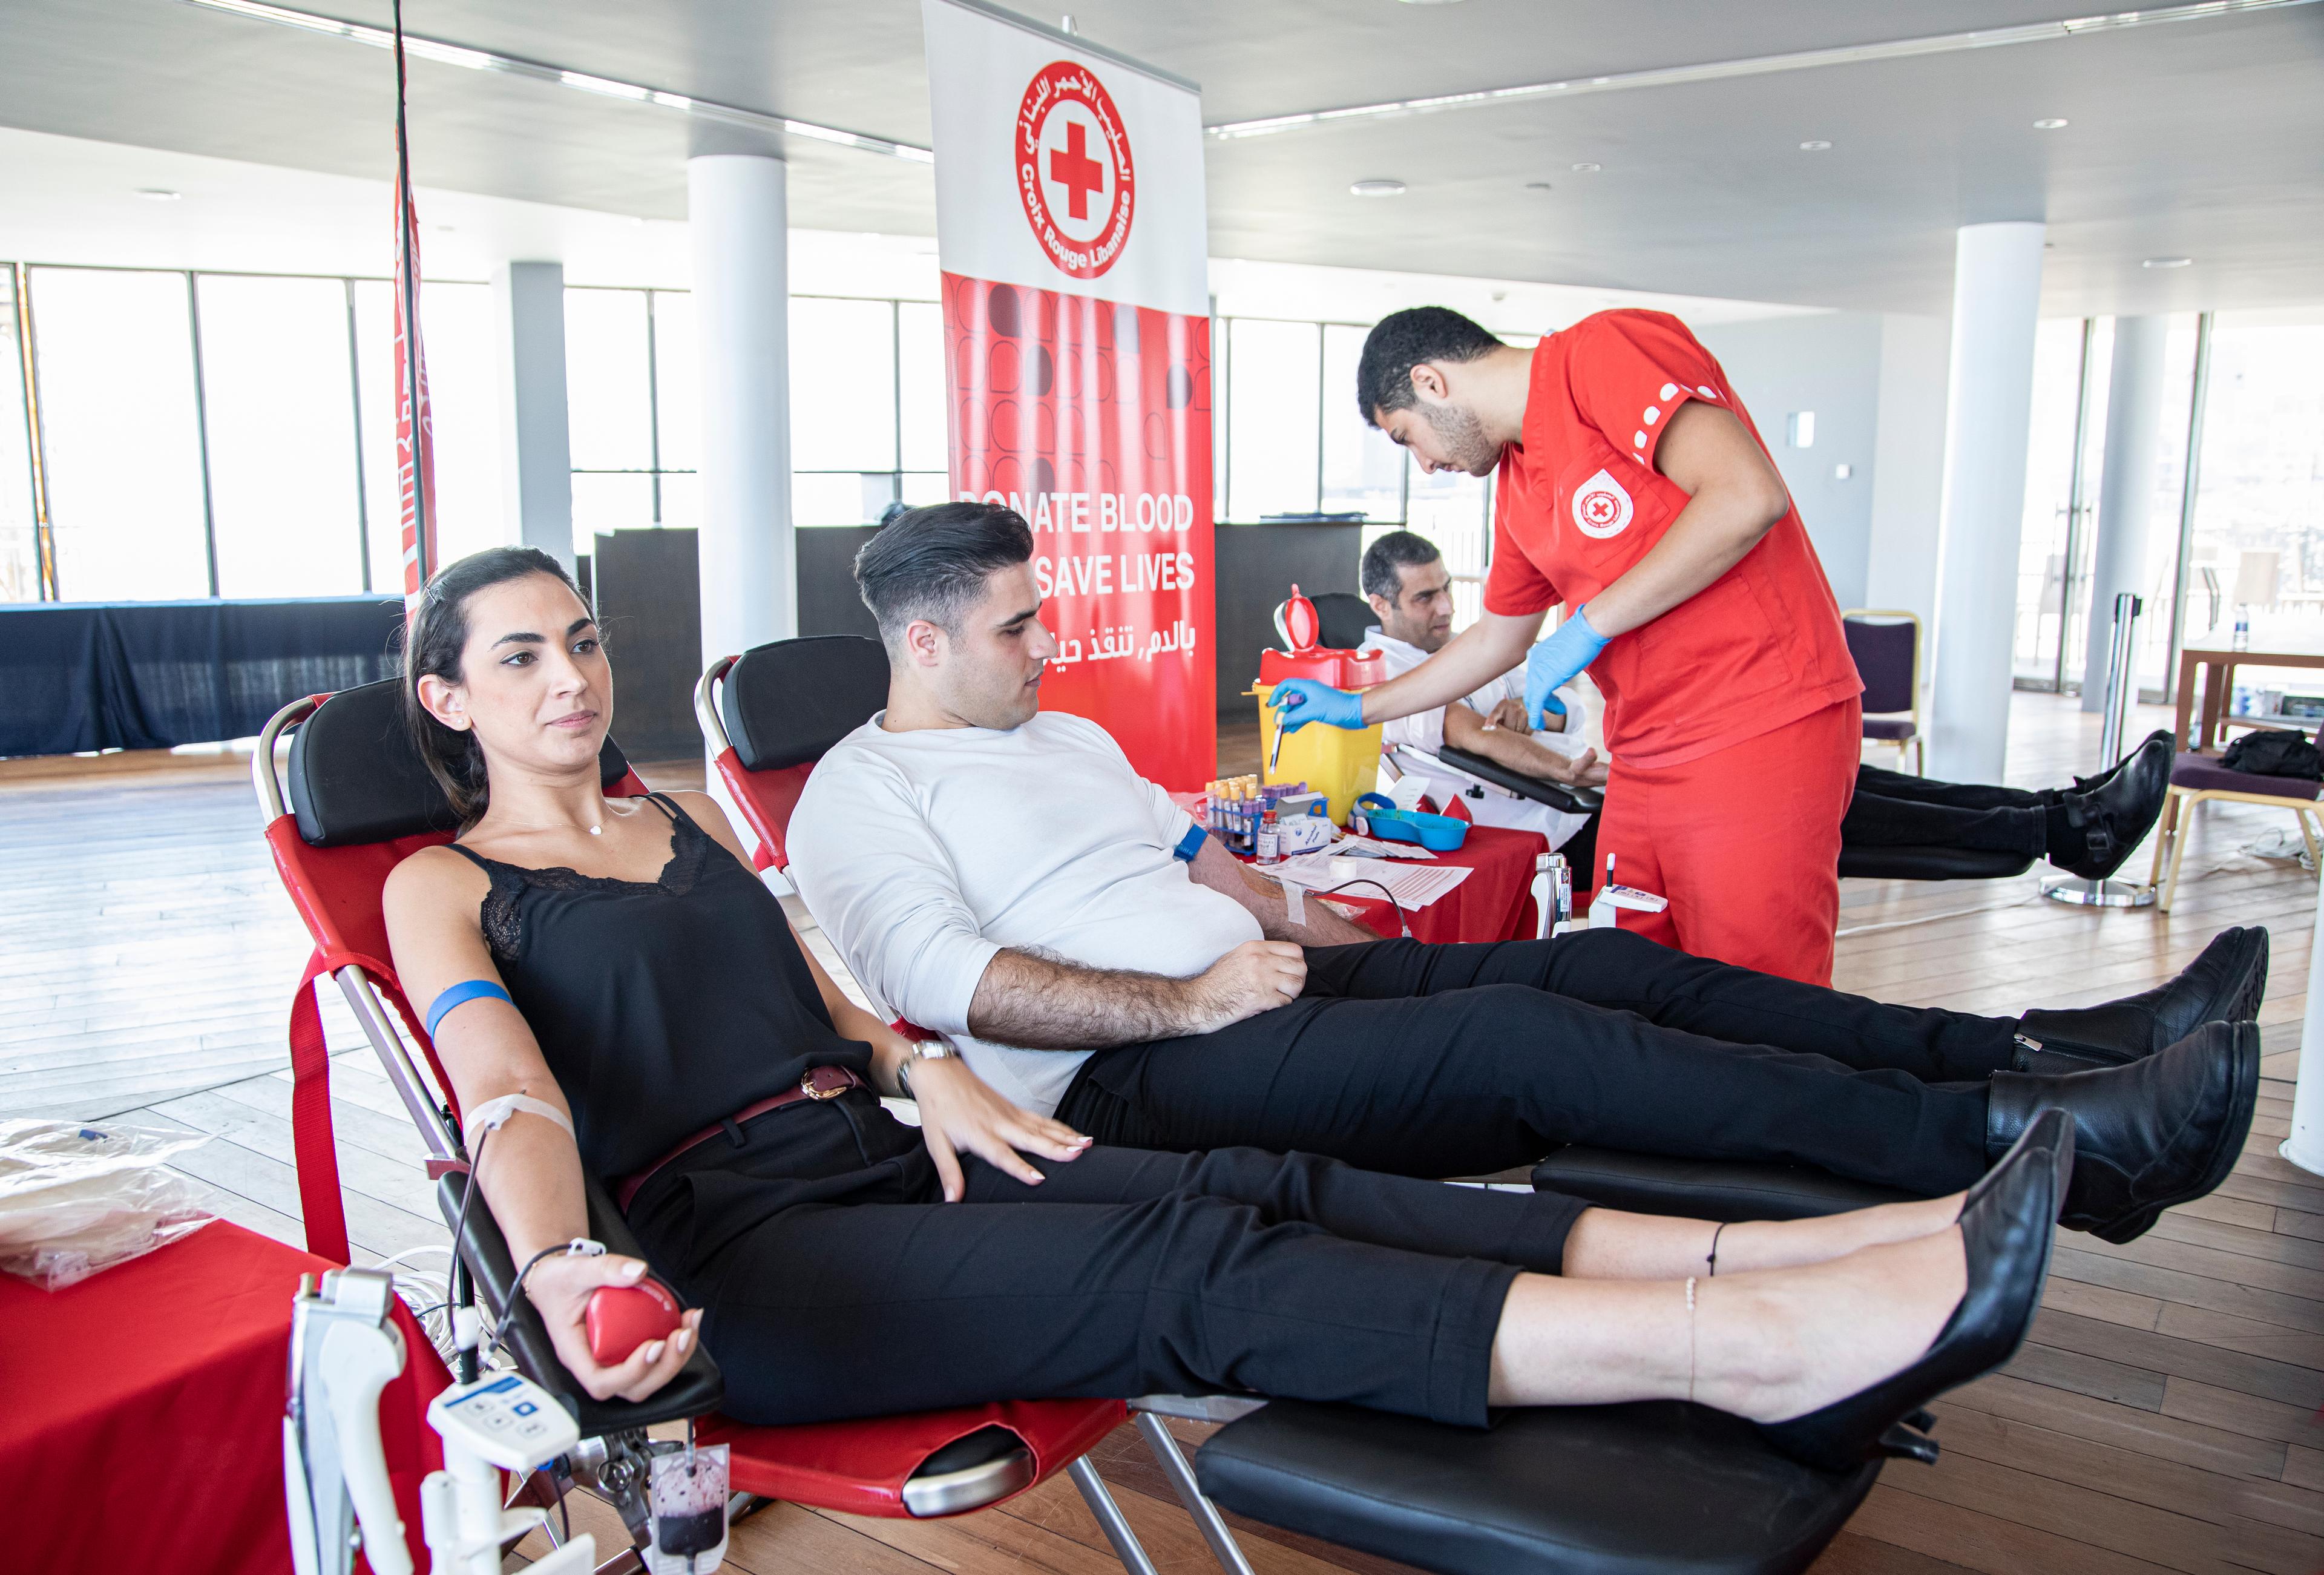 Trois personnes donnent leur sang à la Croix-Rouge libanaise. Elles sont allongées sur des chaises longues.